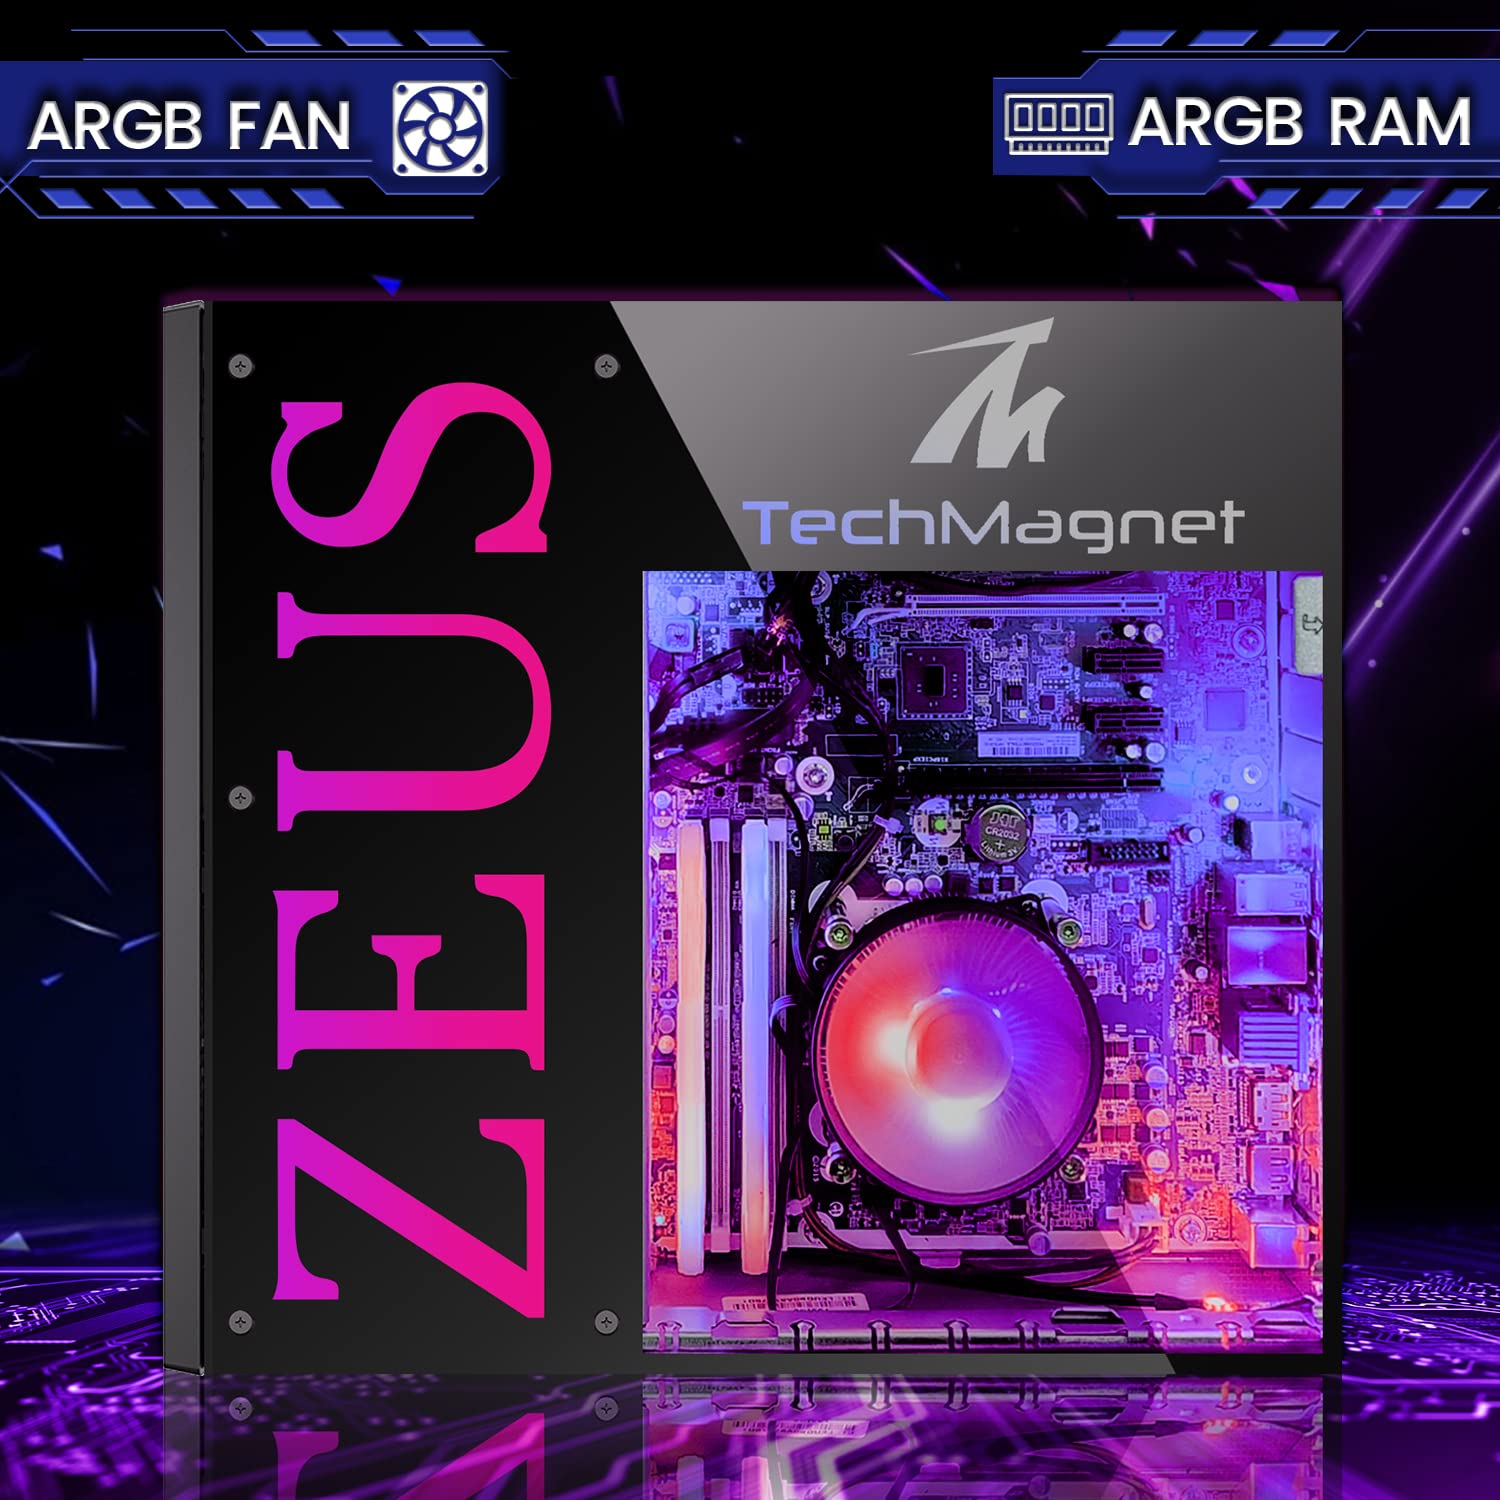 TechMagnet Gaming Desktop PC, Intel i7 6th Gen, Zeus Pro 6, GT 1030, 32GB RAM ARGB, 1TB SSD + 4TB HDD, RGB Front Panel 385 Patterns, RGB Kit, Win 10 Pro (Renewed)